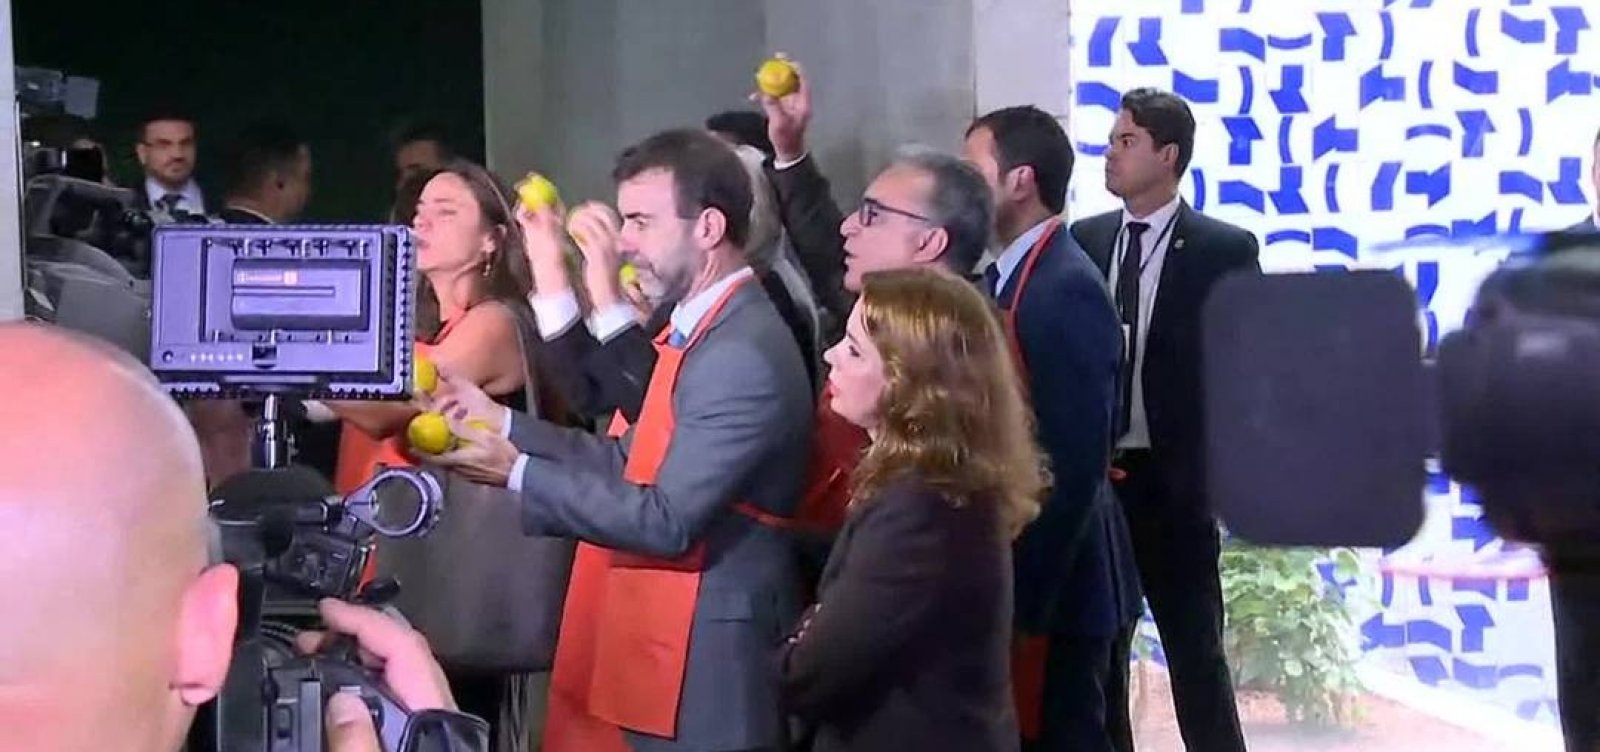 Oposição leva laranjas a Bolsonaro durante apresentação proposta de reforma da Previdência